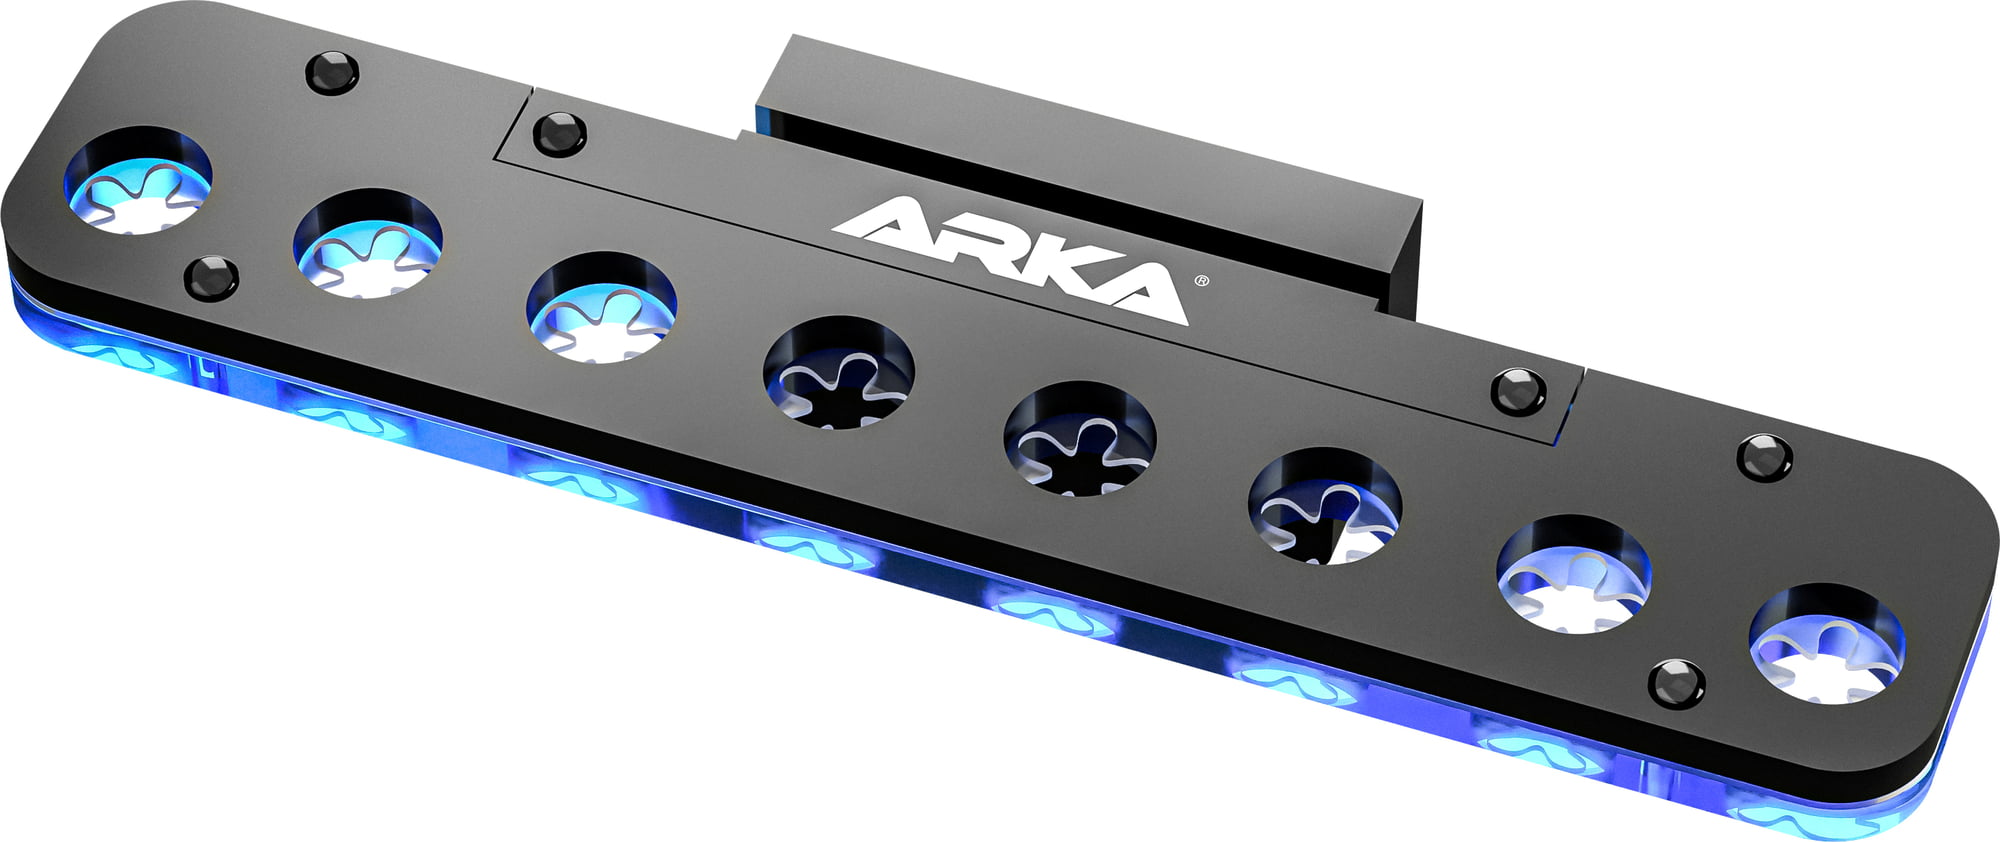 Arka Acryl Frag Rack Deck with Magnet - 8 holes